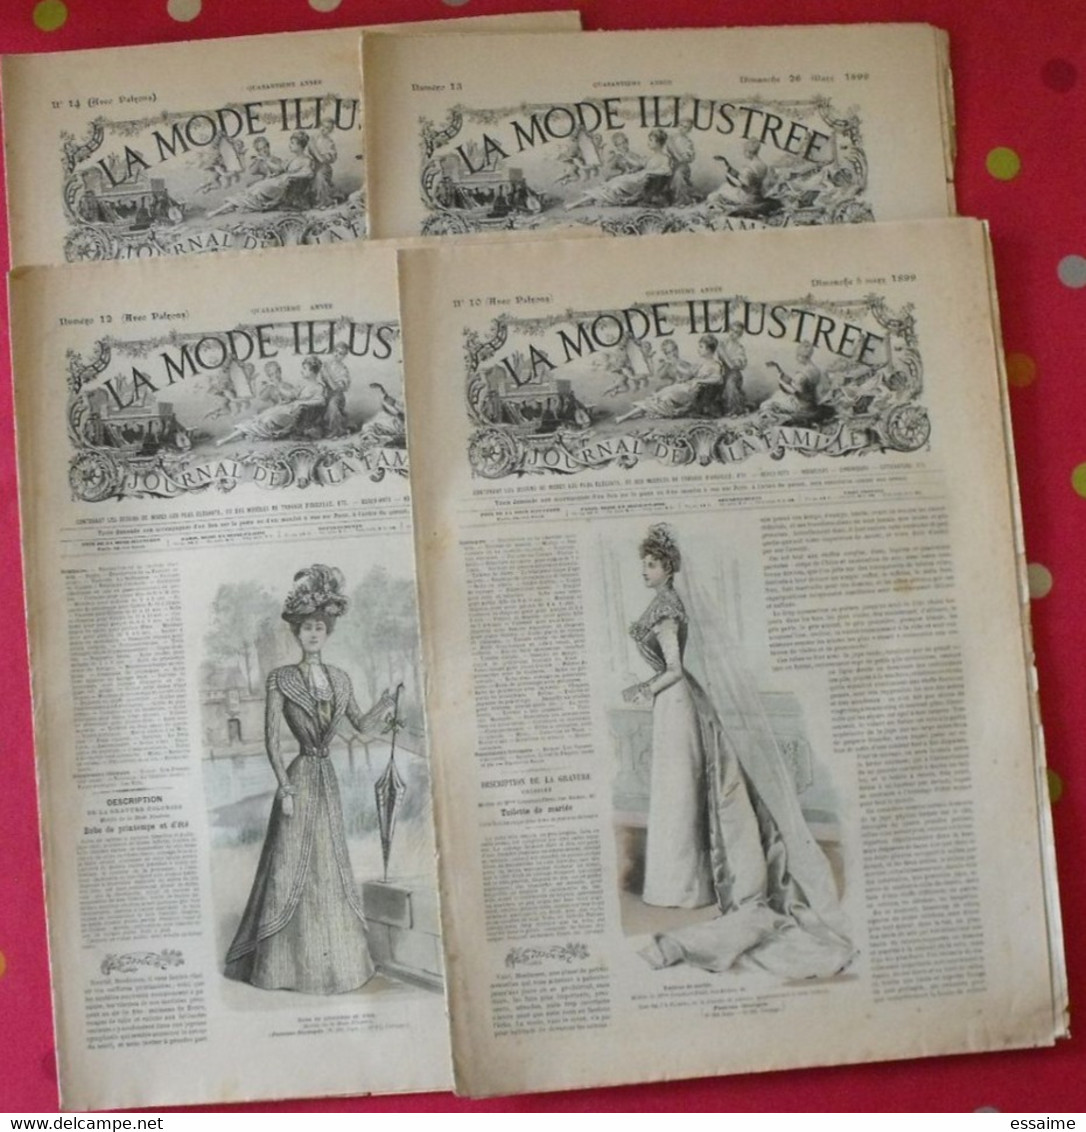 4 Revues La Mode Illustrée, Journal De La Famille.  N° 10,12,13,14 De 1899. Couverture En Couleur. Jolies Gravures - Mode